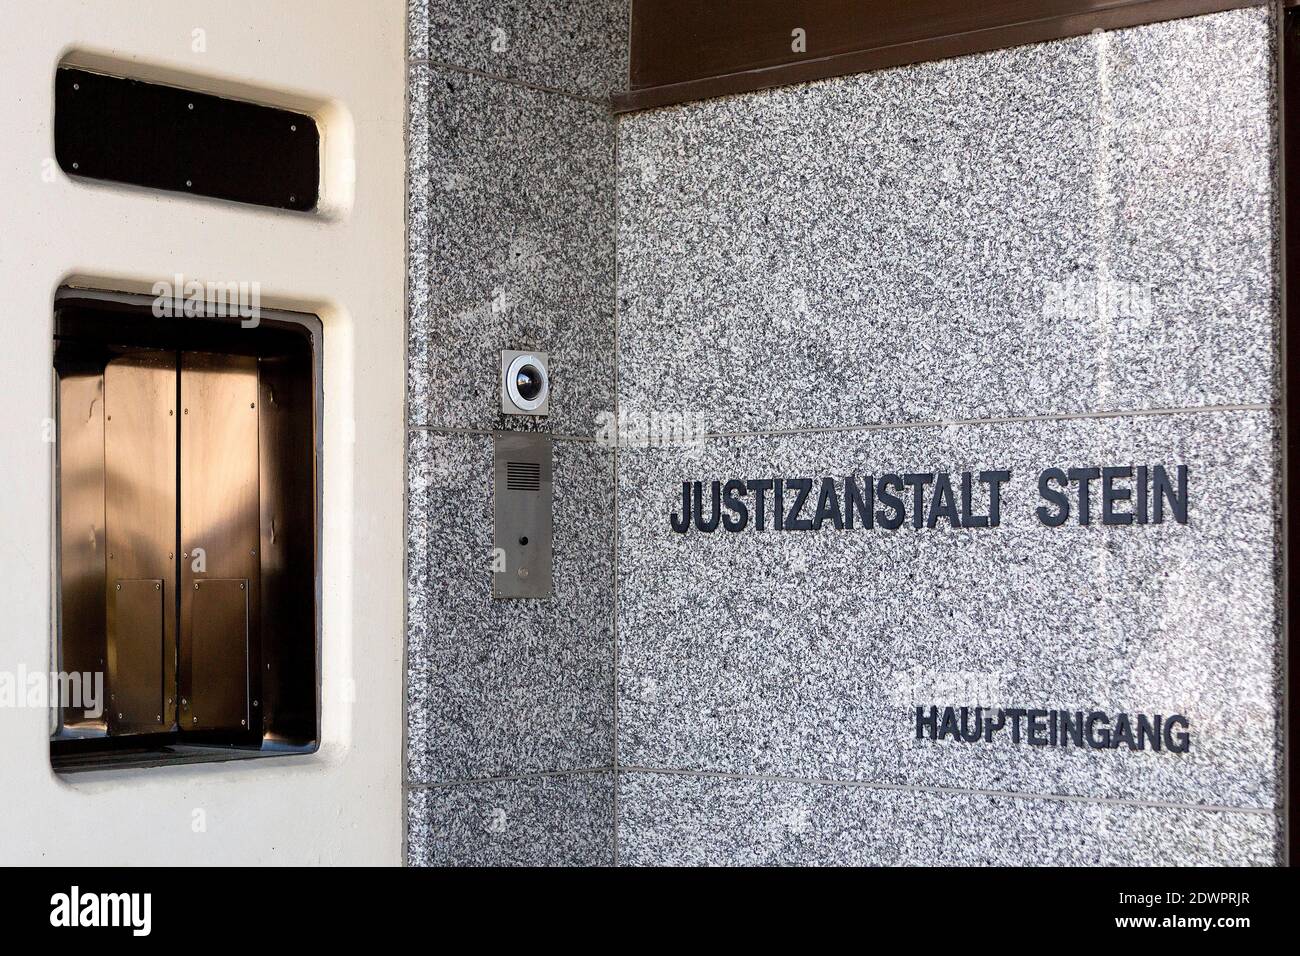 Haupteingang Justizanstalt Stein, Krems NÖ, Österreich Stock Photo